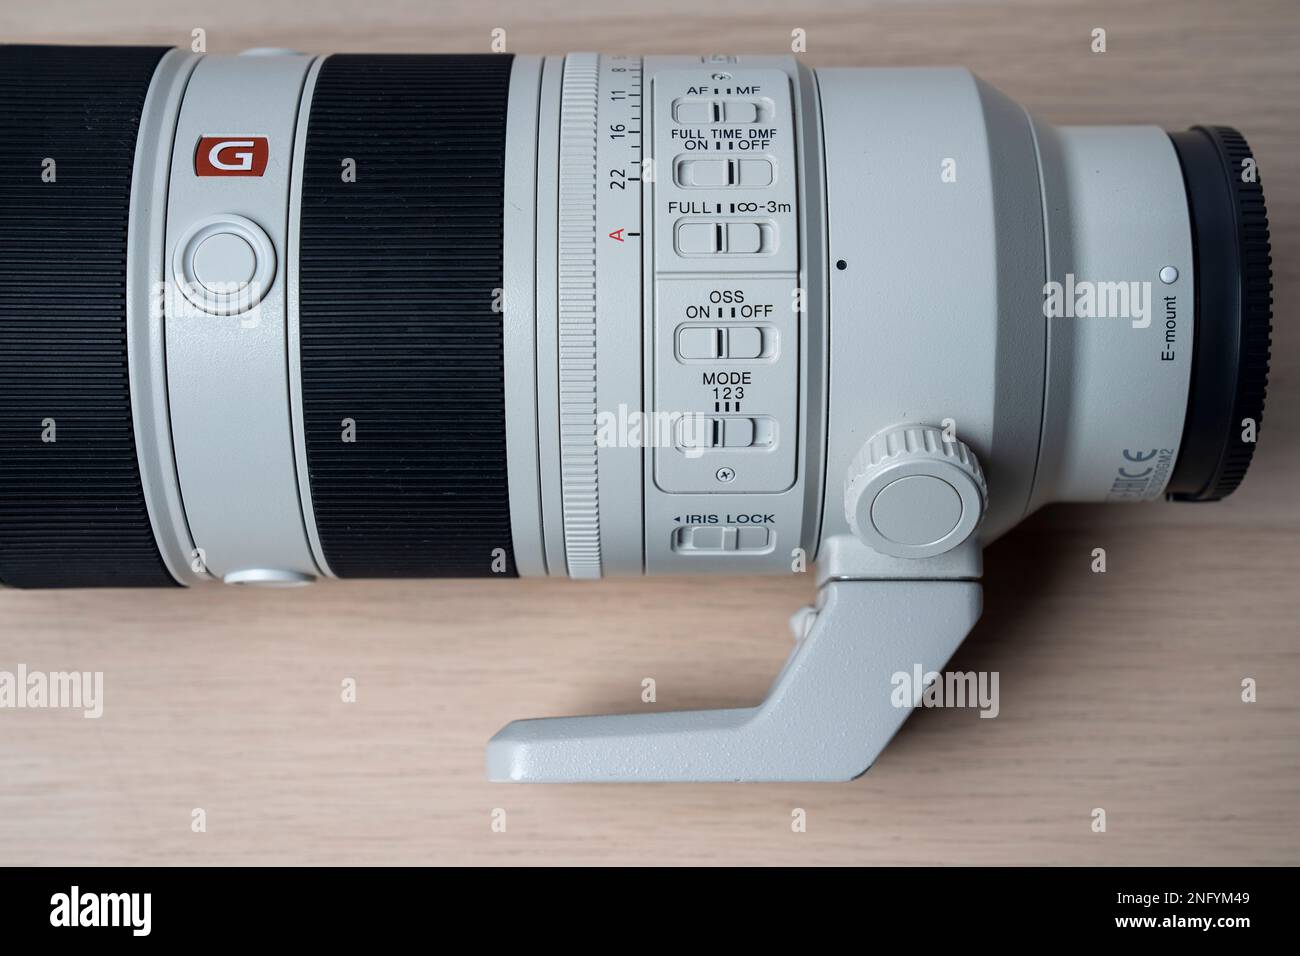 G-Master Sony FE 70-200mm f2,8 GM OSS II nouvel objectif pour appareil photo sans miroir. Mise au point sélective, isolée sur fond blanc Banque D'Images